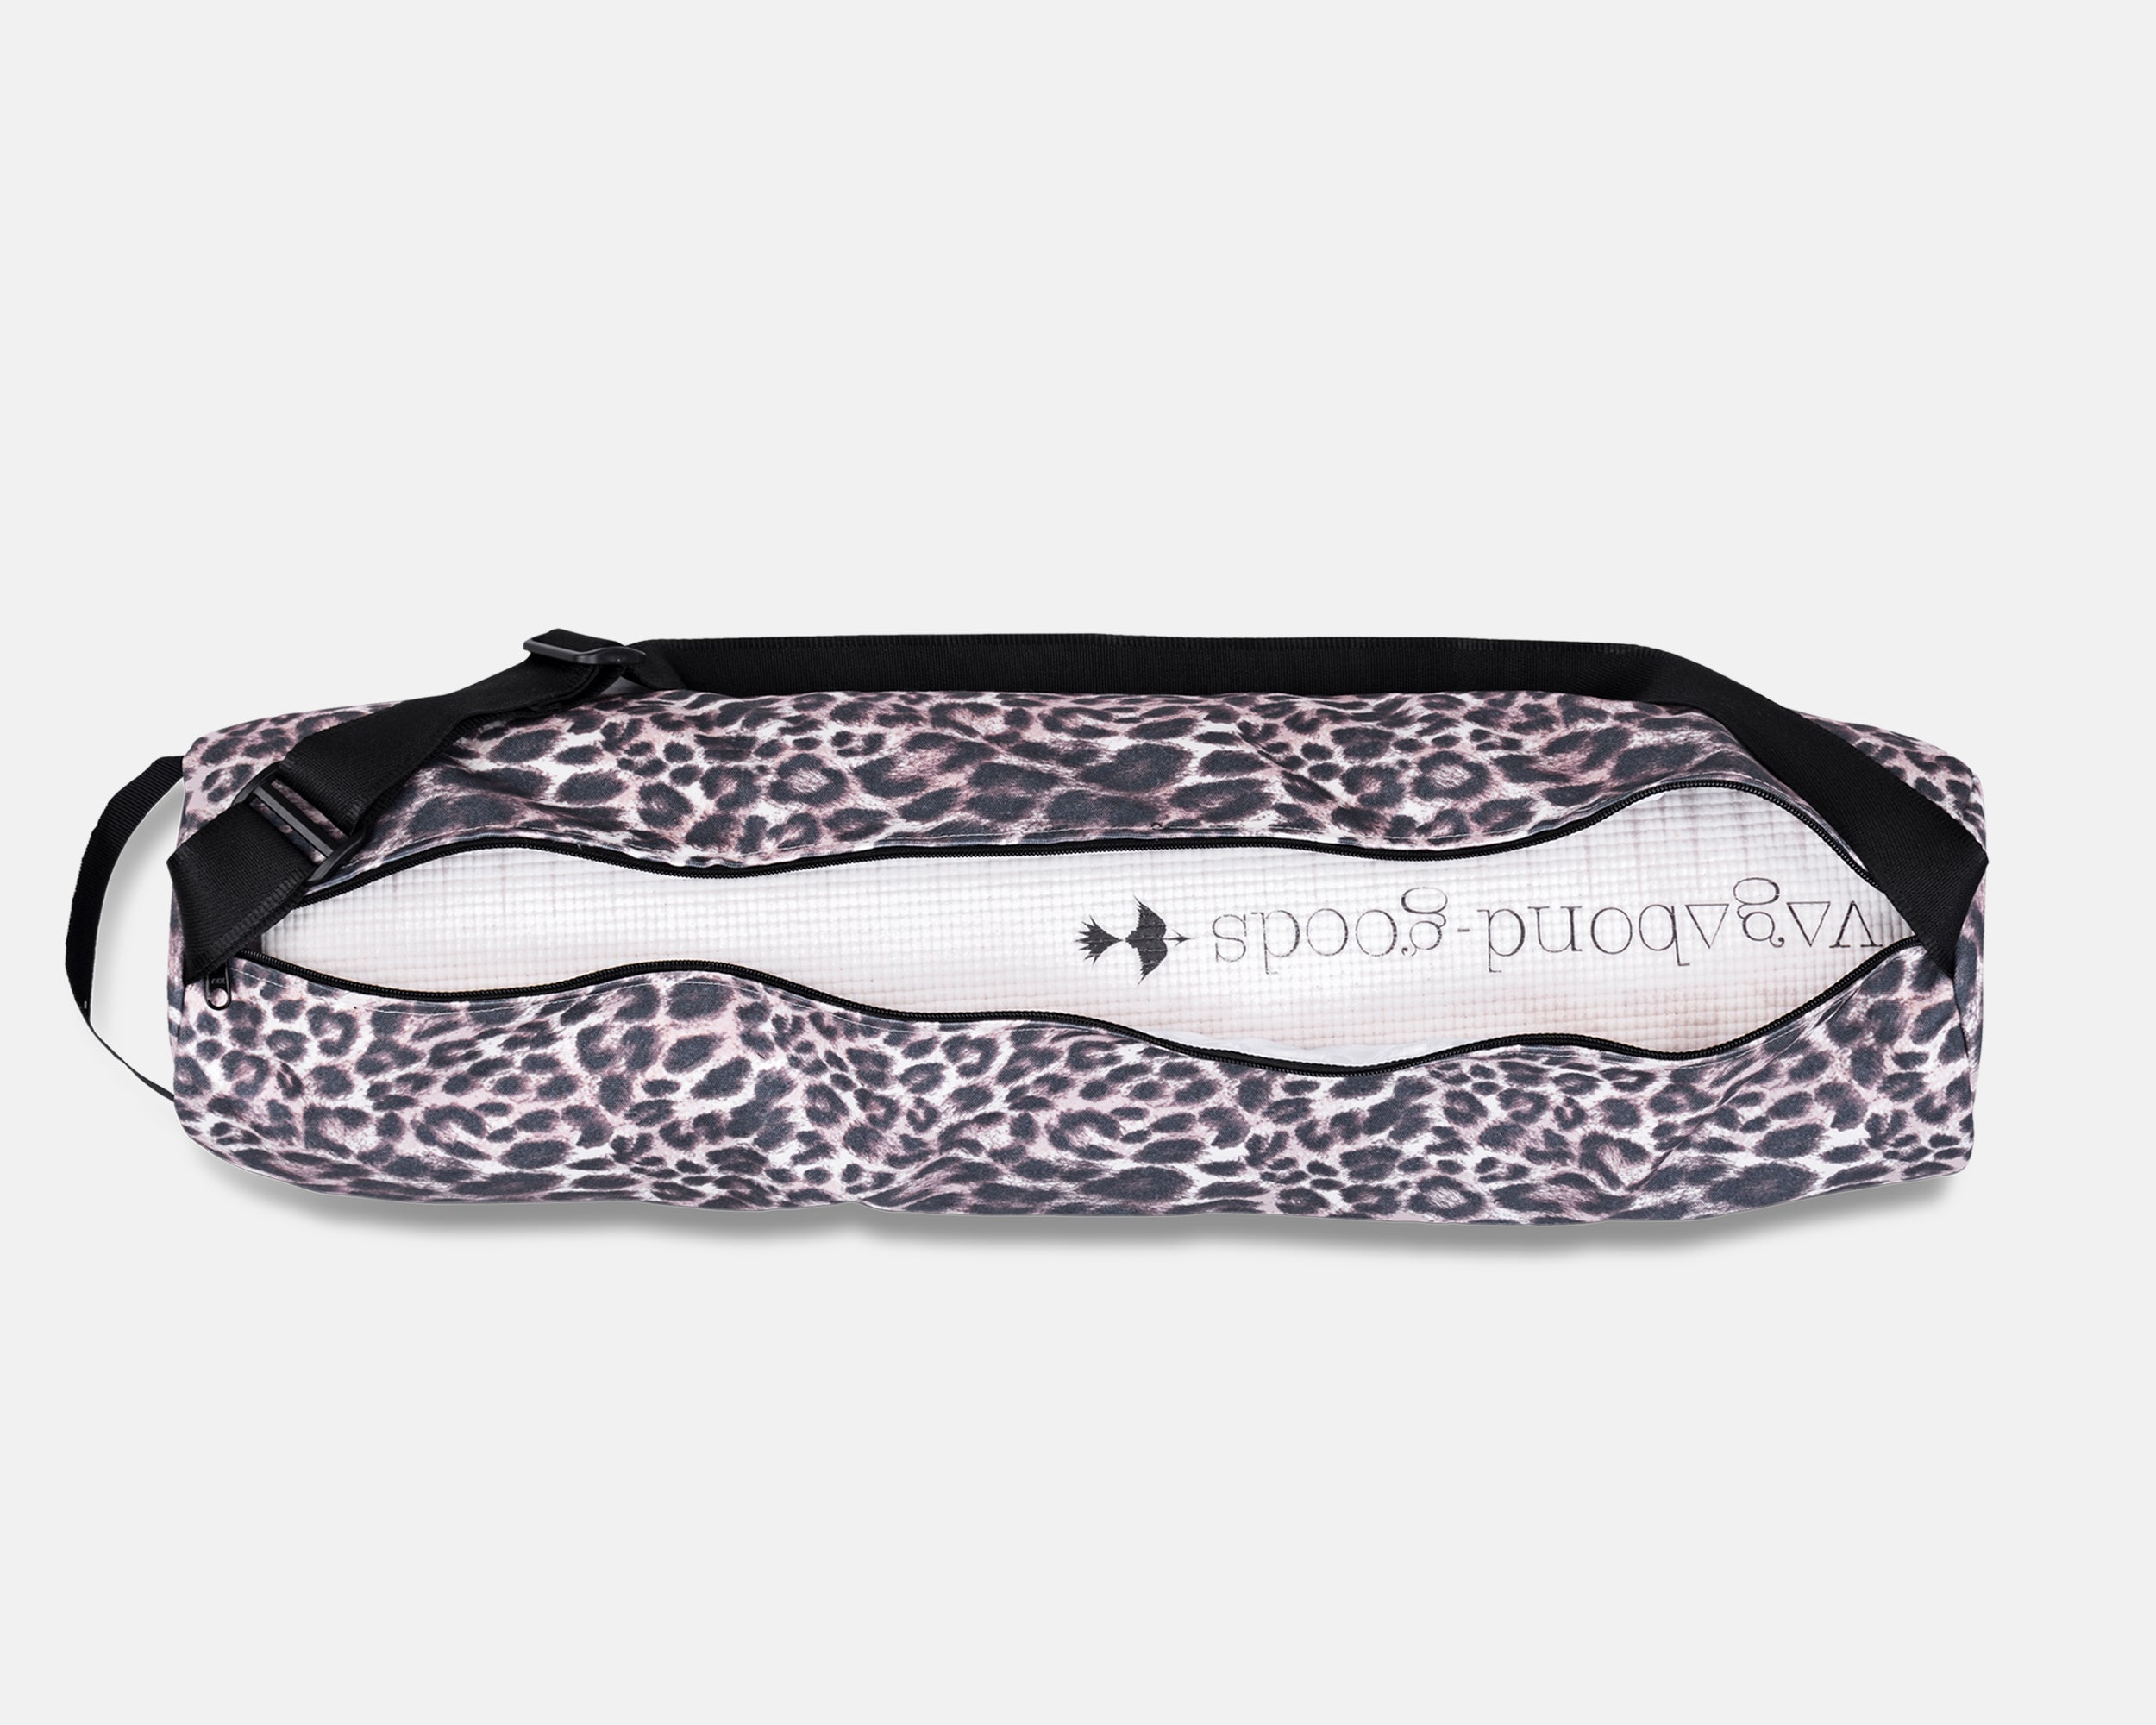 Leopard Print Yoga Mat Bag